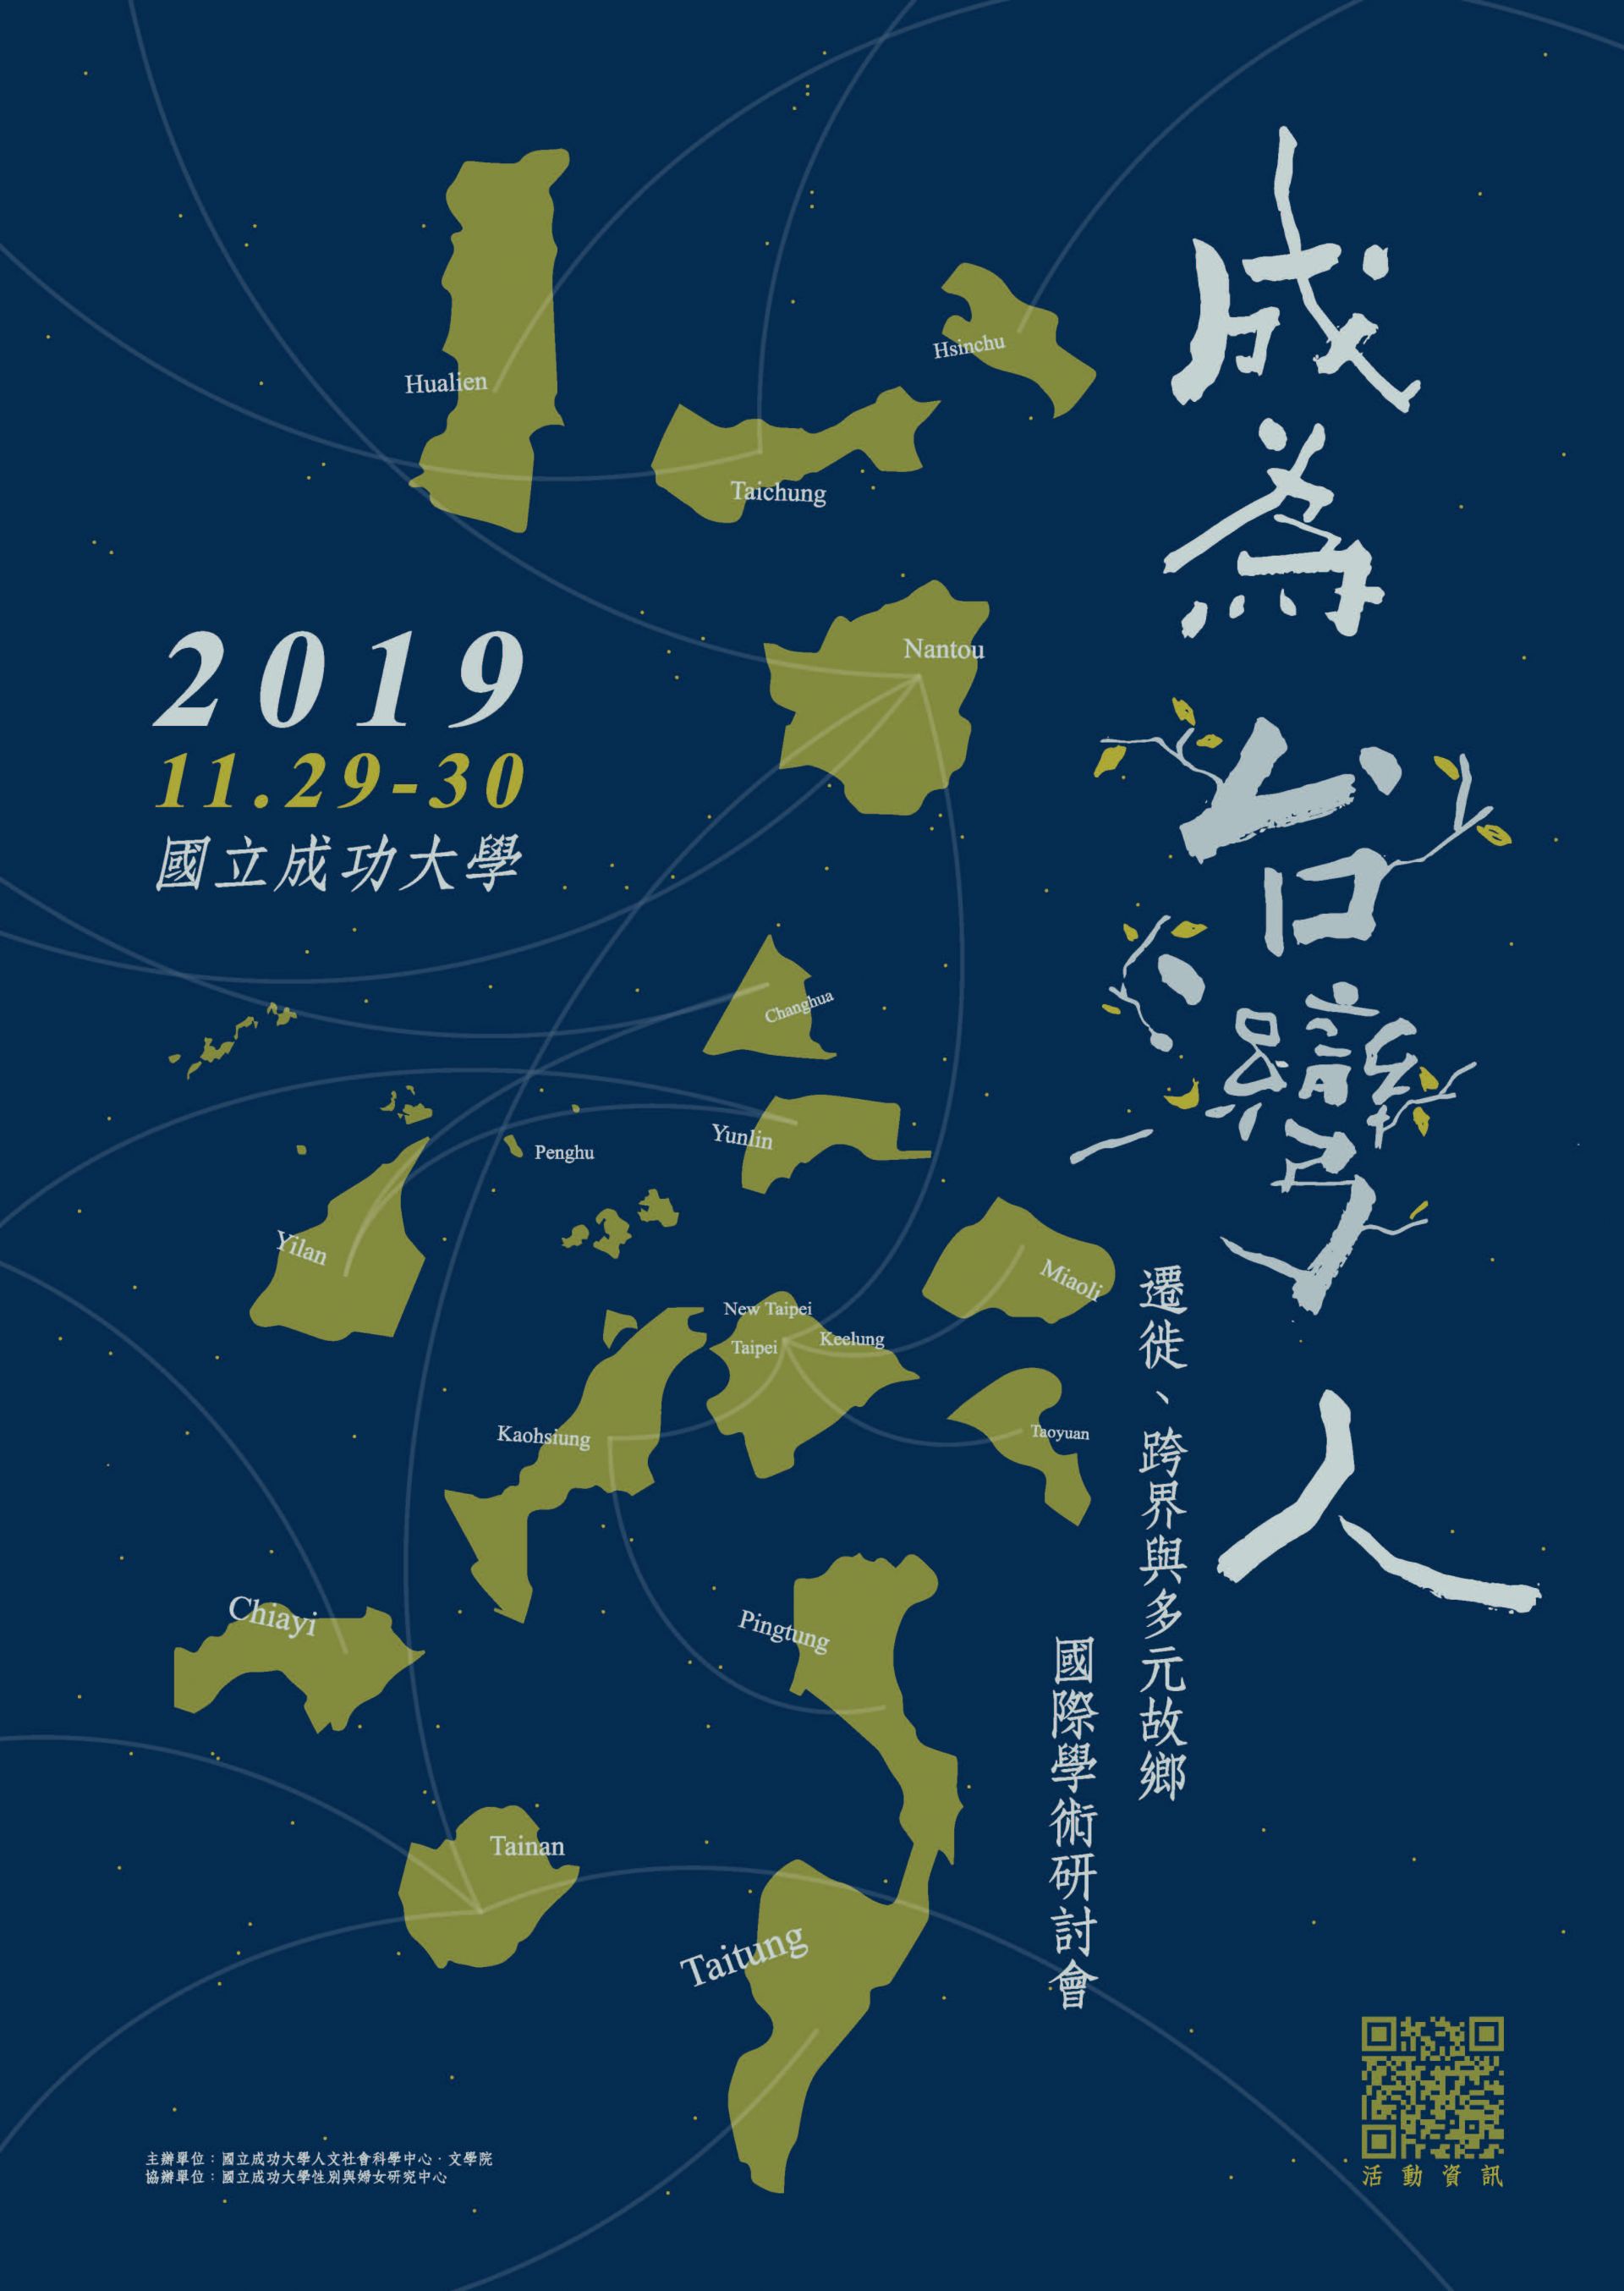 「成為臺灣人 : 遷徙、跨界與多元故鄉」 國際學術研討會